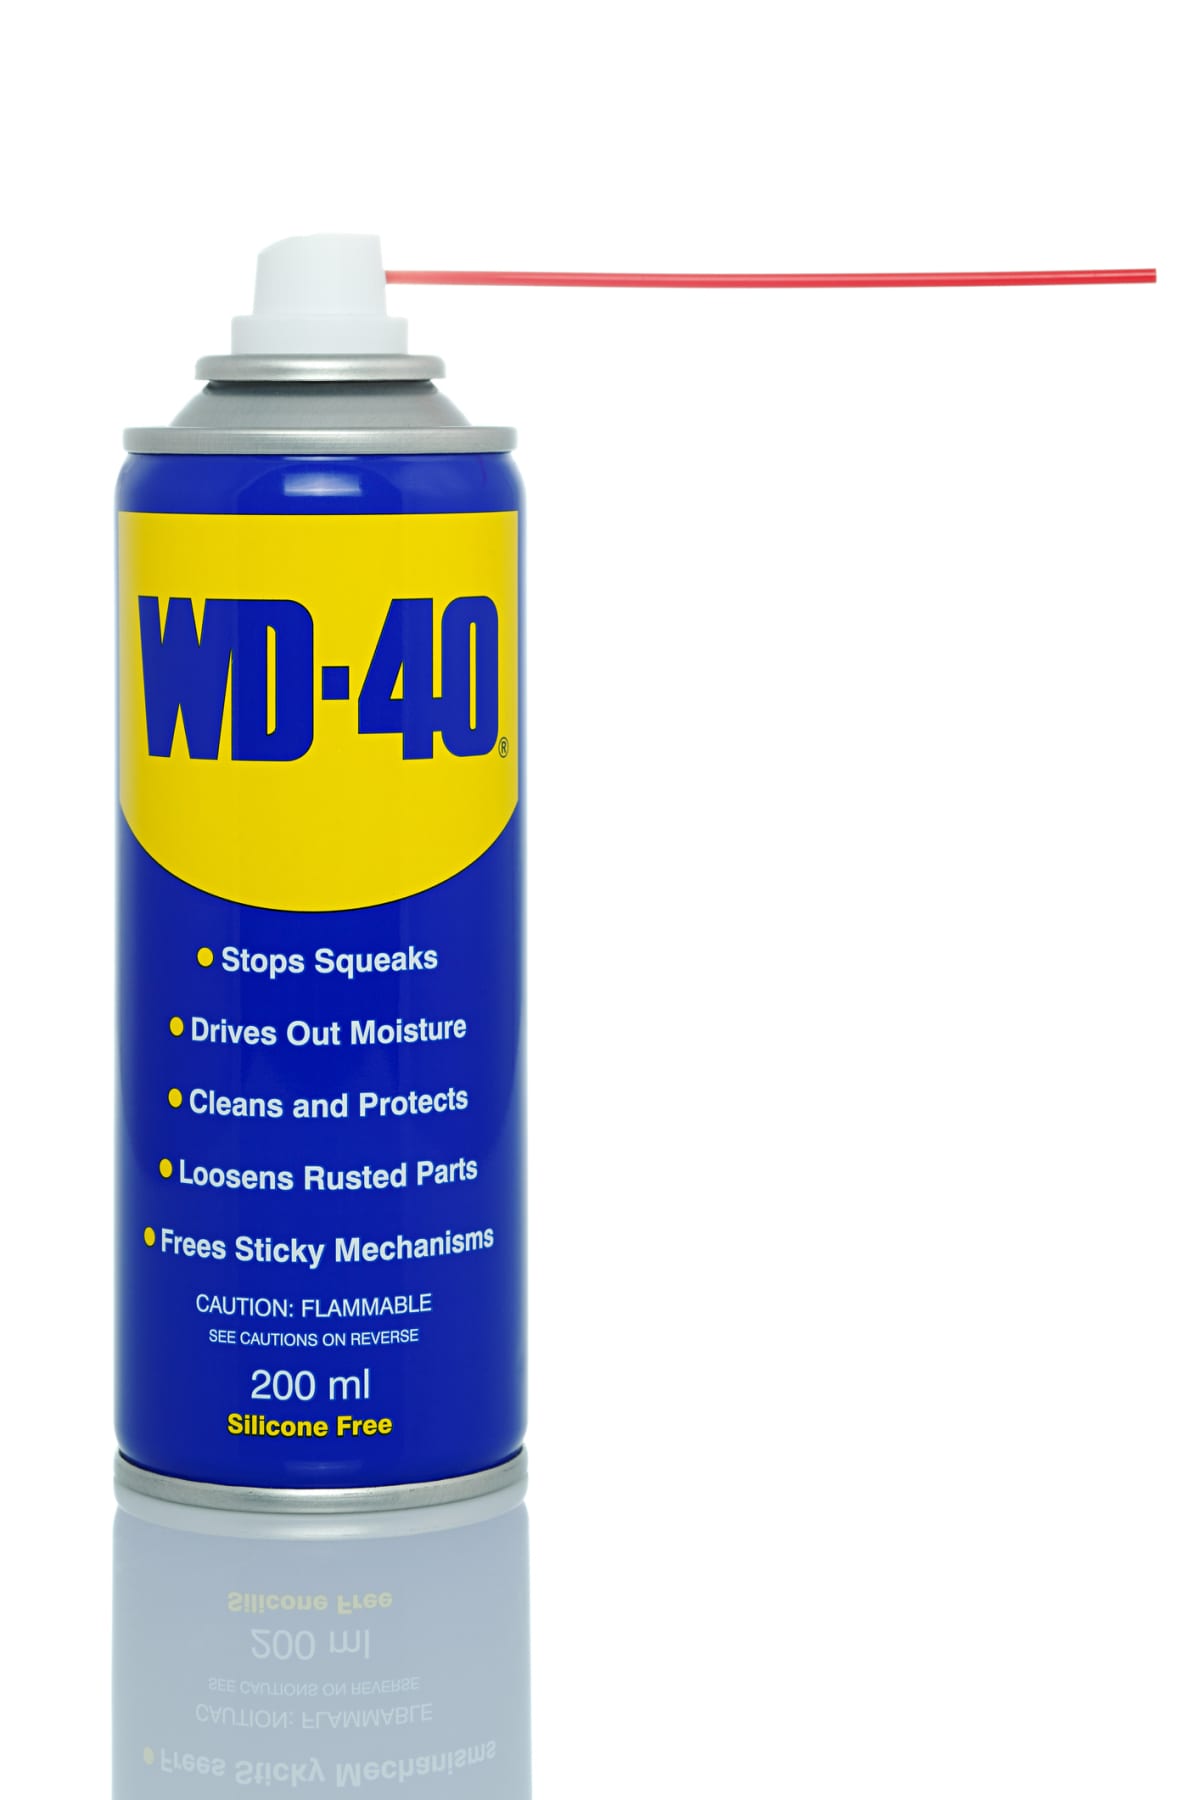 WD-40 lubricant spray